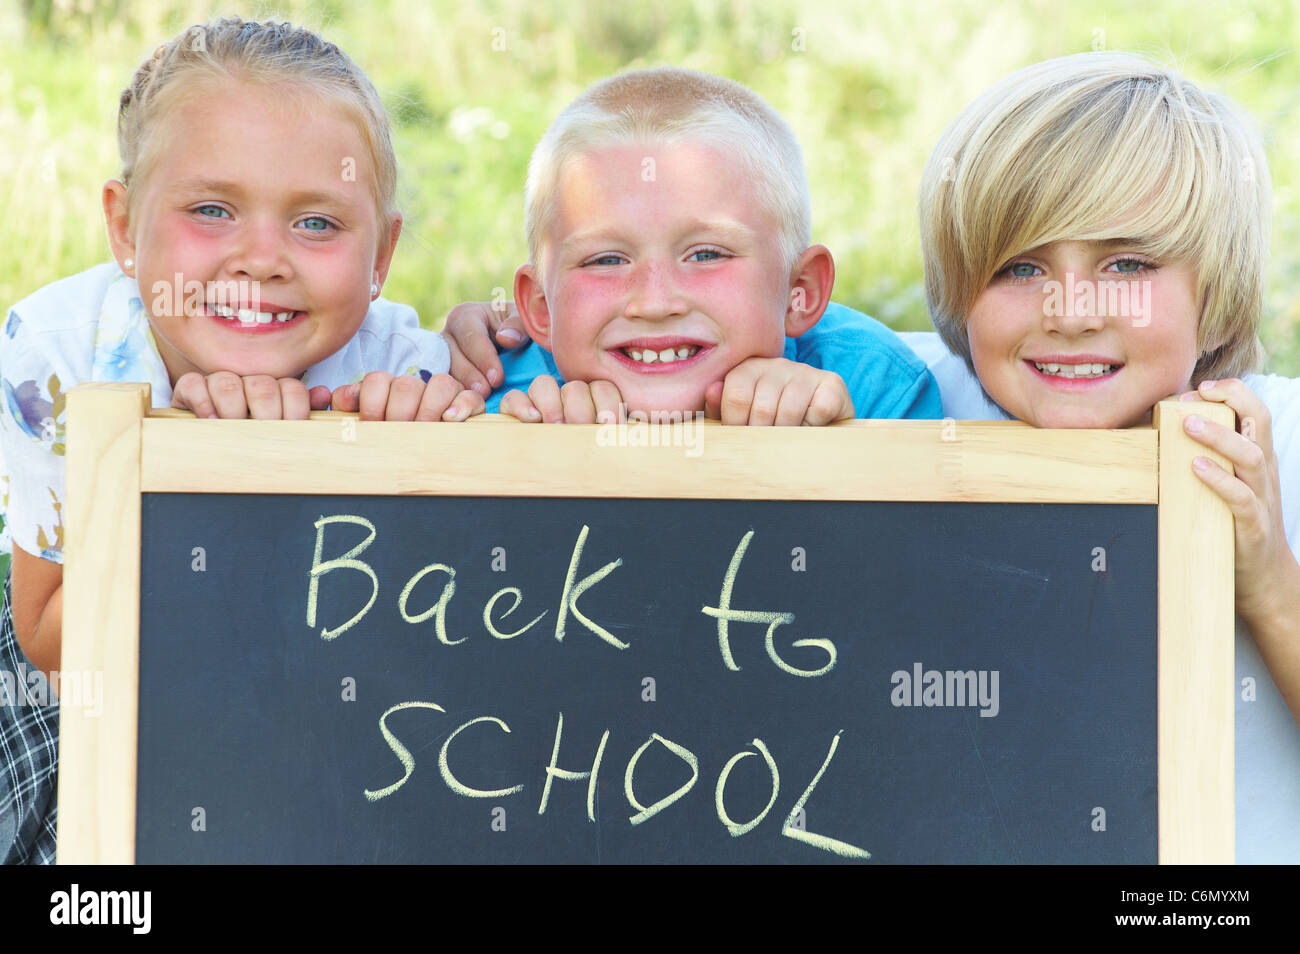 Kinder stehen neben der Tafel mit dem Text "back to School" Stockfoto